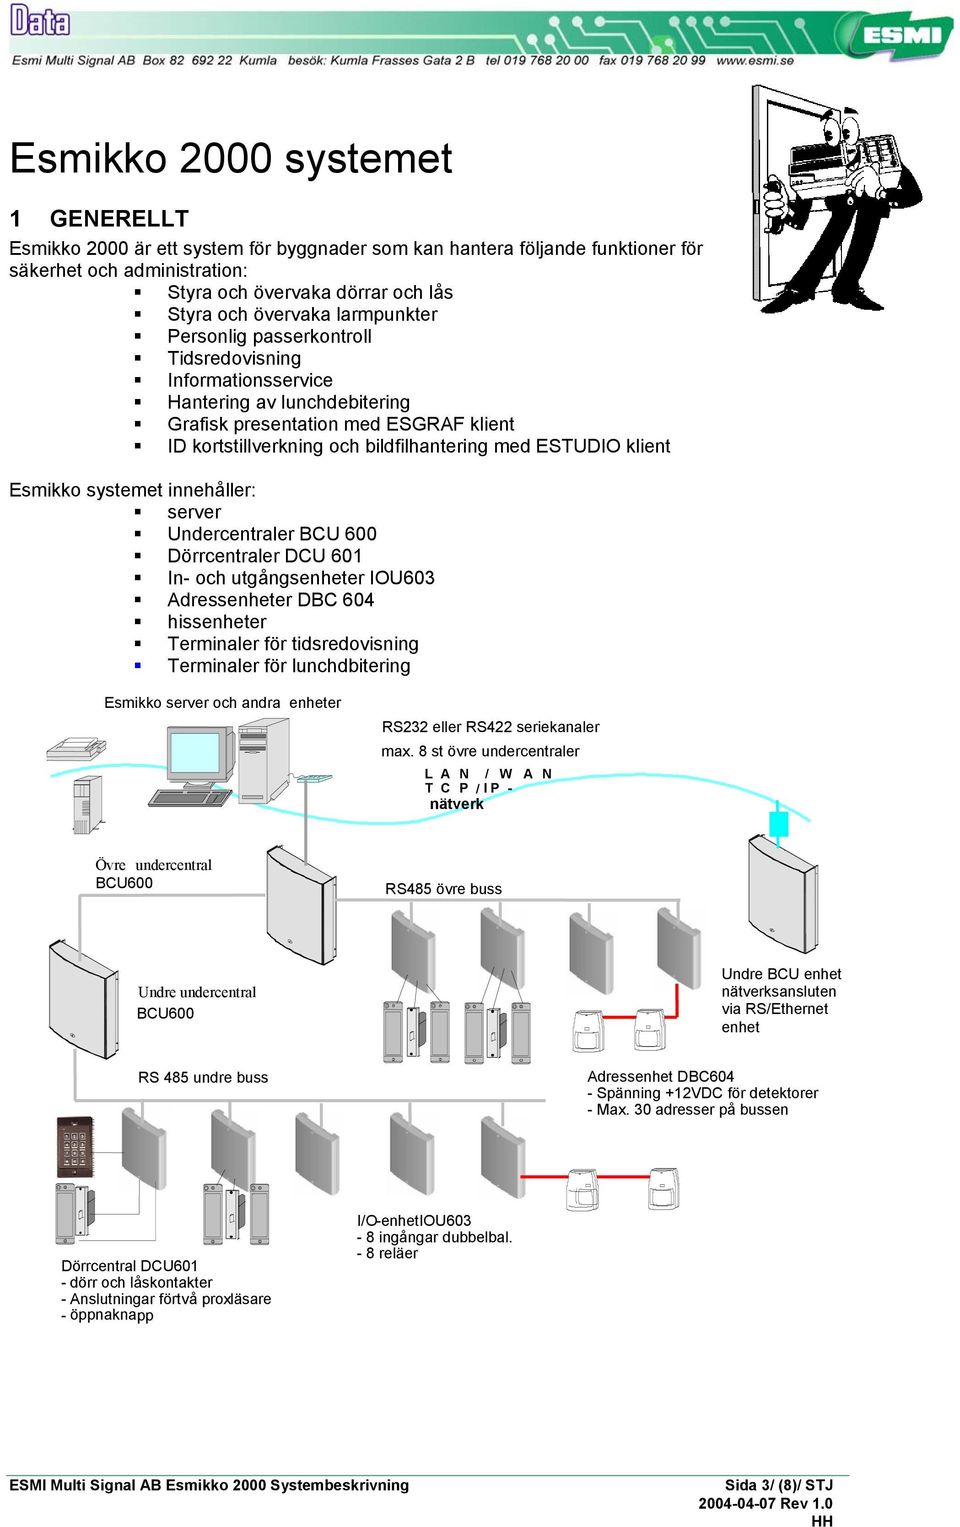 klient Esmikko systemet innehåller: server Undercentraler BCU 600 Dörrcentraler DCU 601 In- och utgångsenheter IOU603 Adressenheter DBC 604 hissenheter Terminaler för tidsredovisning Terminaler för